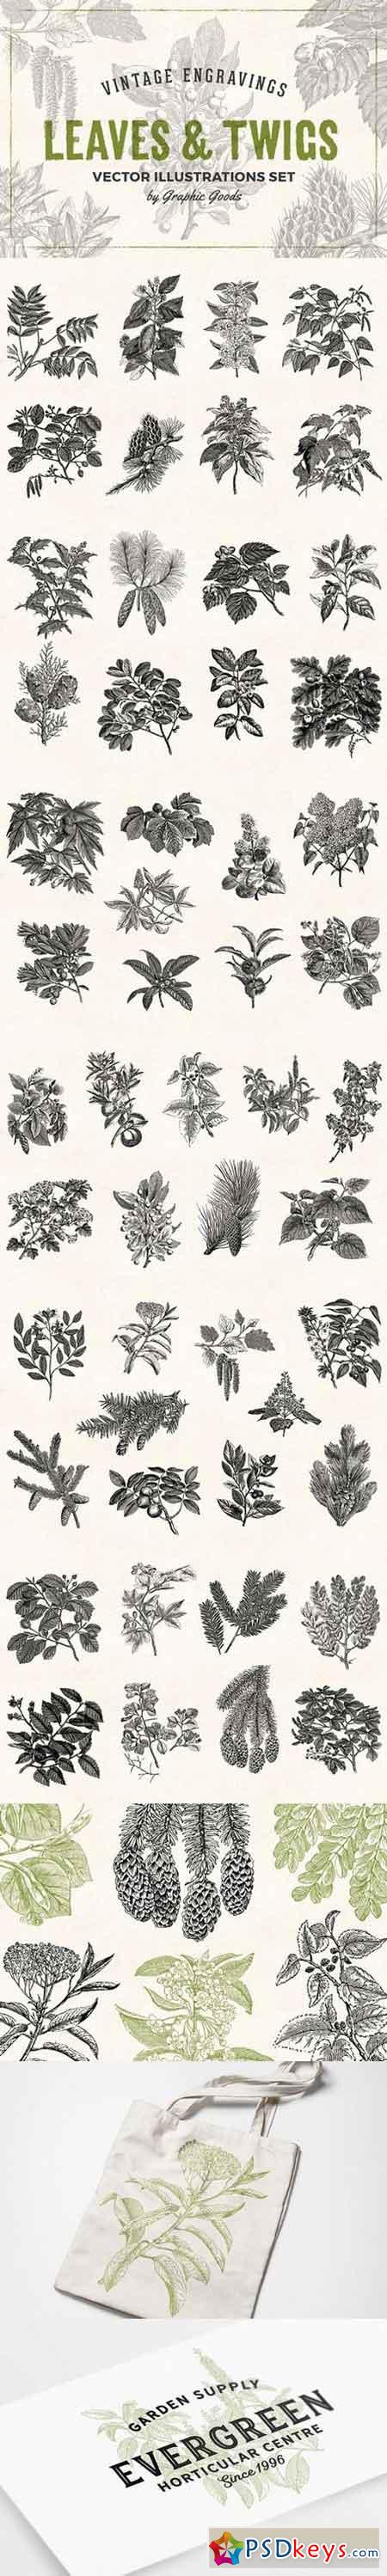 Leaves & Twigs Vintage Illustrations 1633688